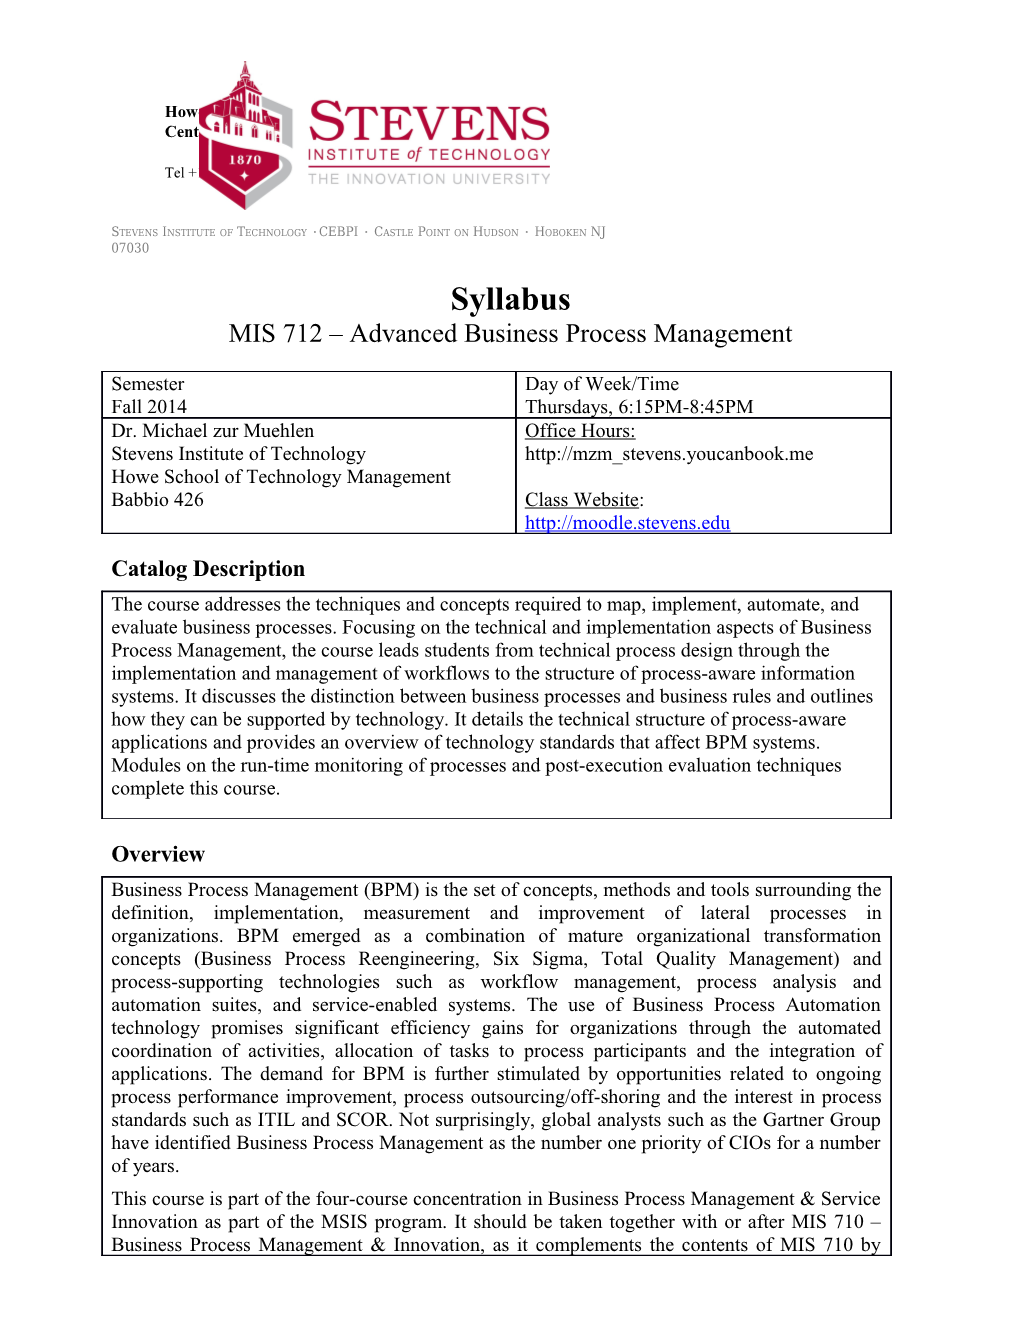 MIS 712 Advanced Business Process Management